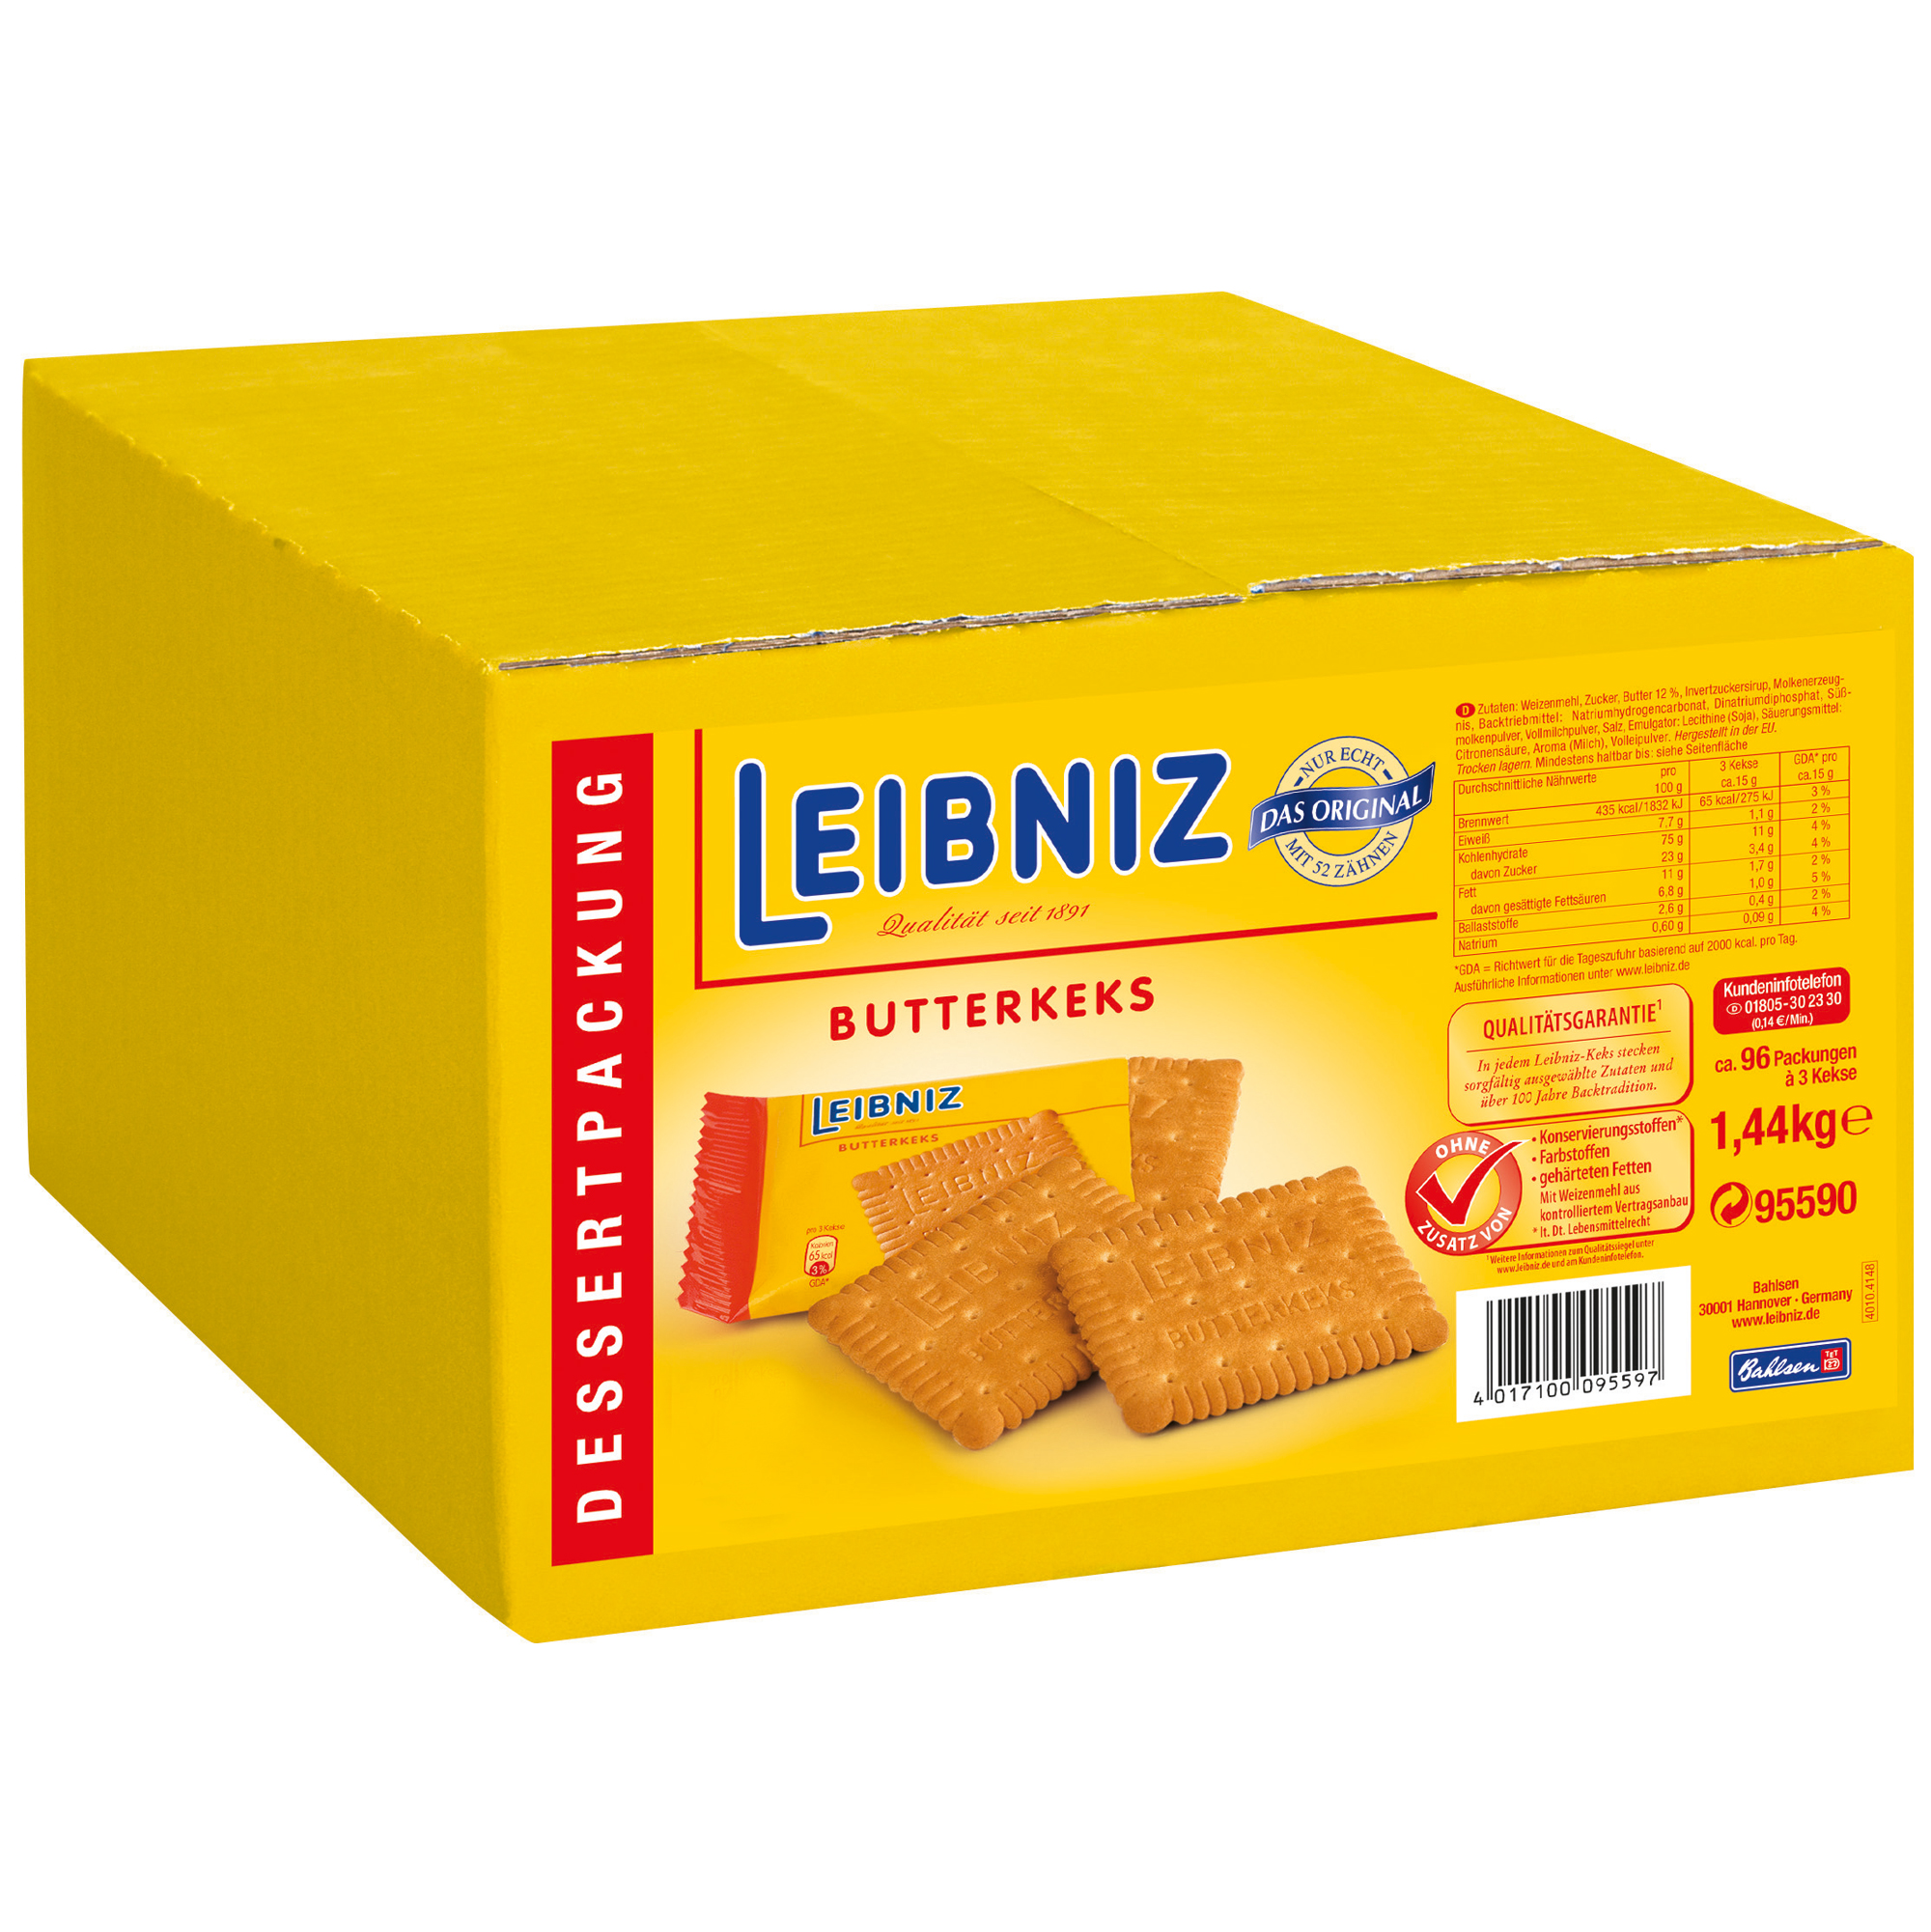 leibniz-butterkeks-1-44kg-catering-karton.jpg